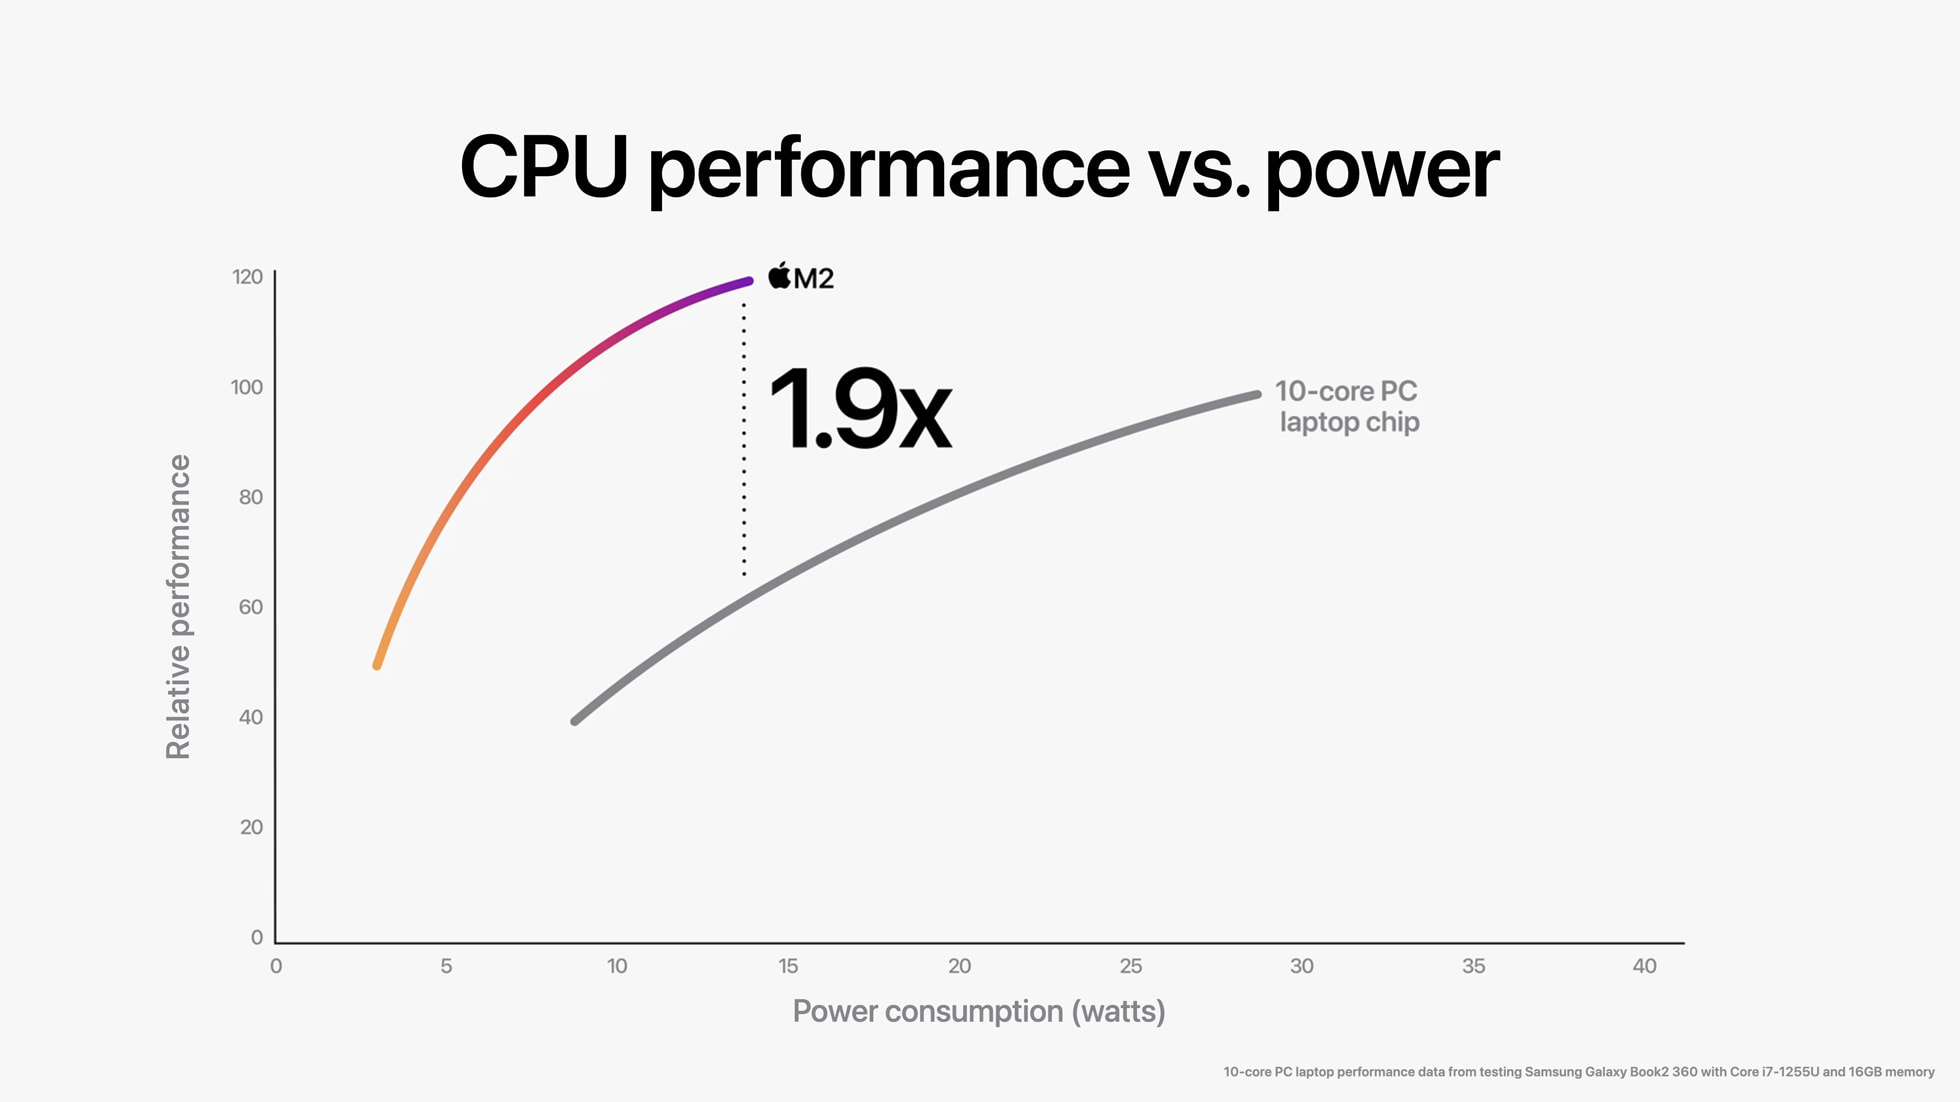 M2 vs chip PC 10-core